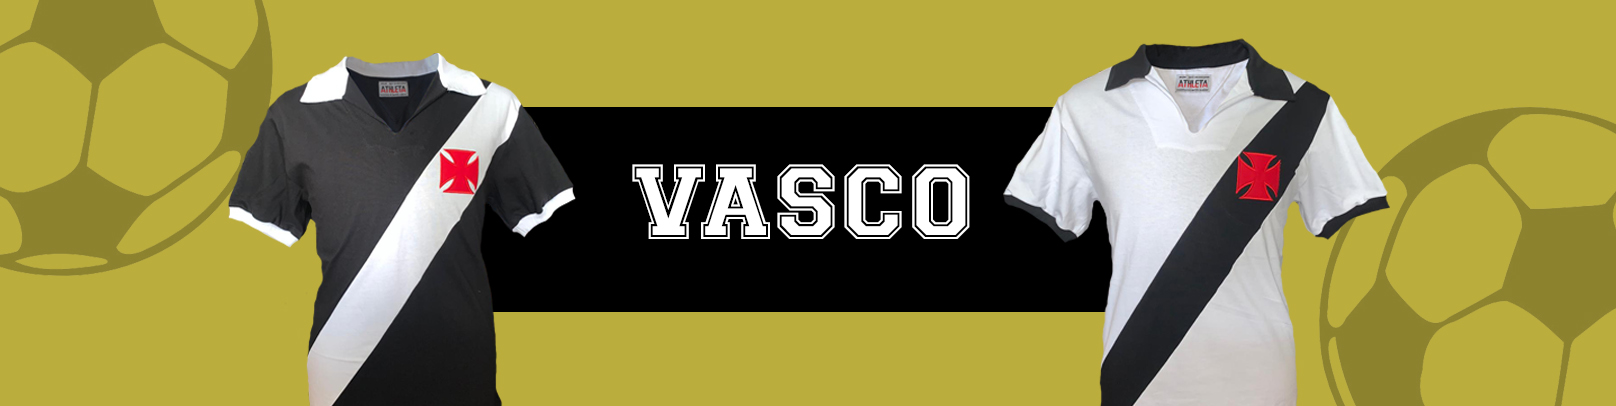 Banner Vasco_